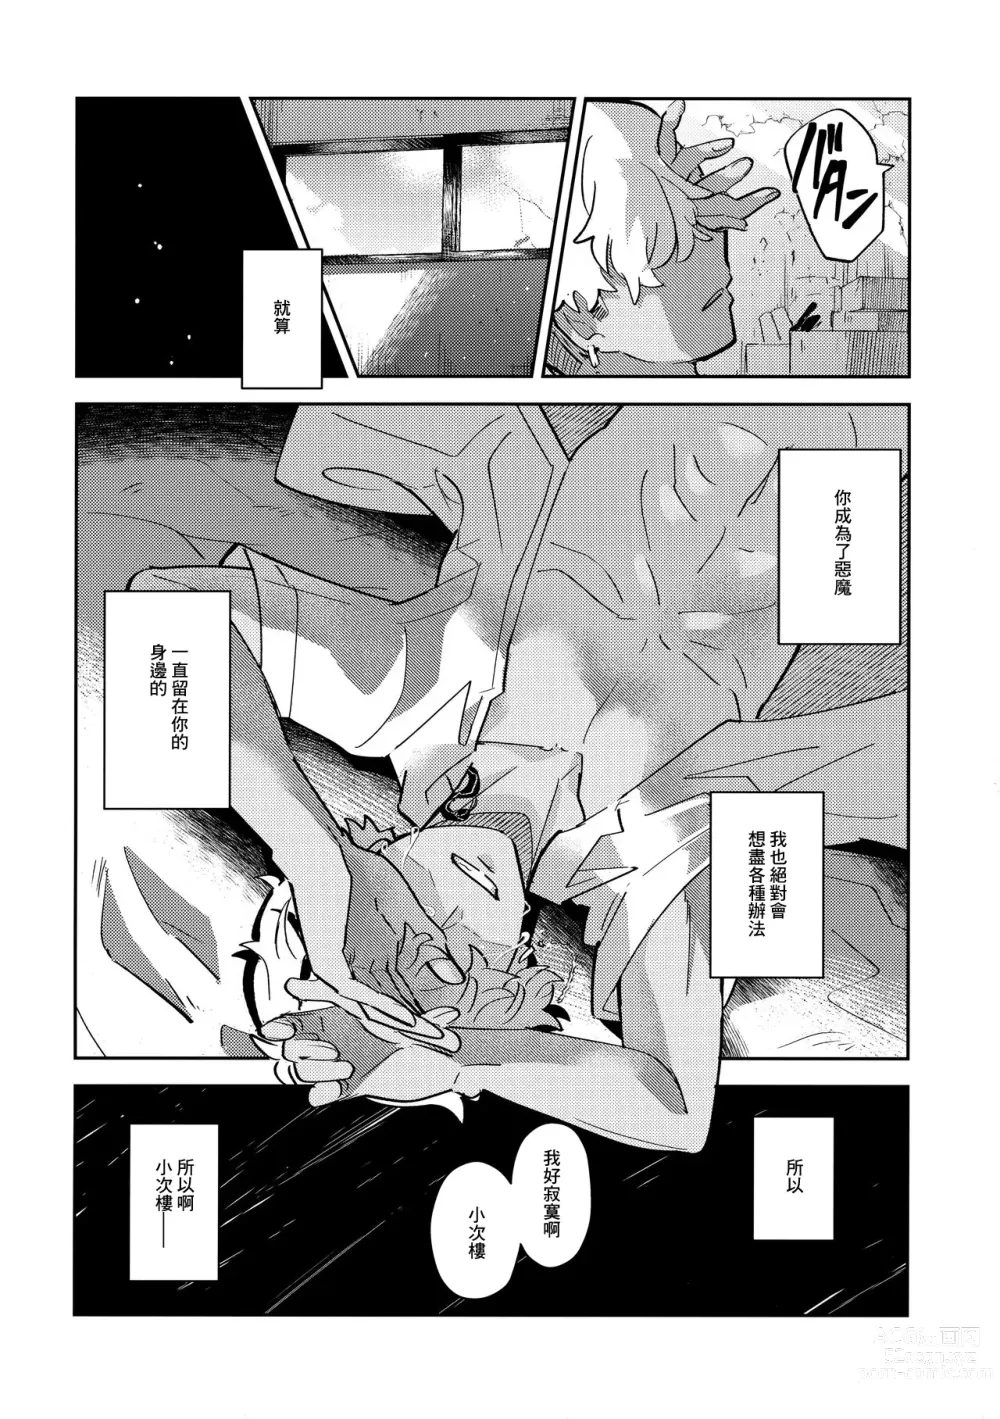 Page 21 of doujinshi Rojiura no Yosuga